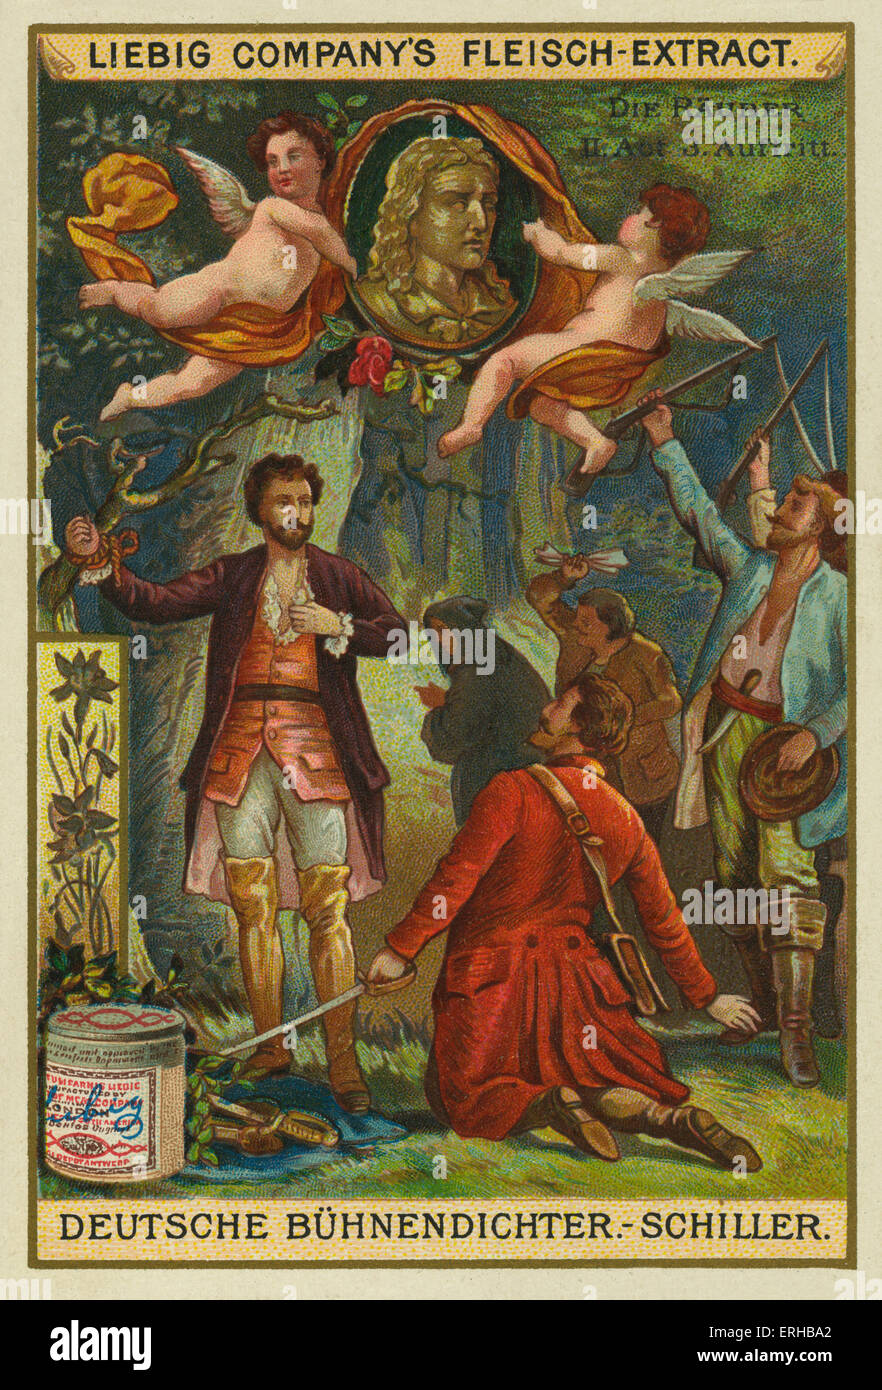 Die Räuber (Räuber sterben) von Johann Christoph Friedrich von Schiller - Akt II, Szene 3 (1871). Liebig-Karte, deutscher Dramatiker, Stockfoto